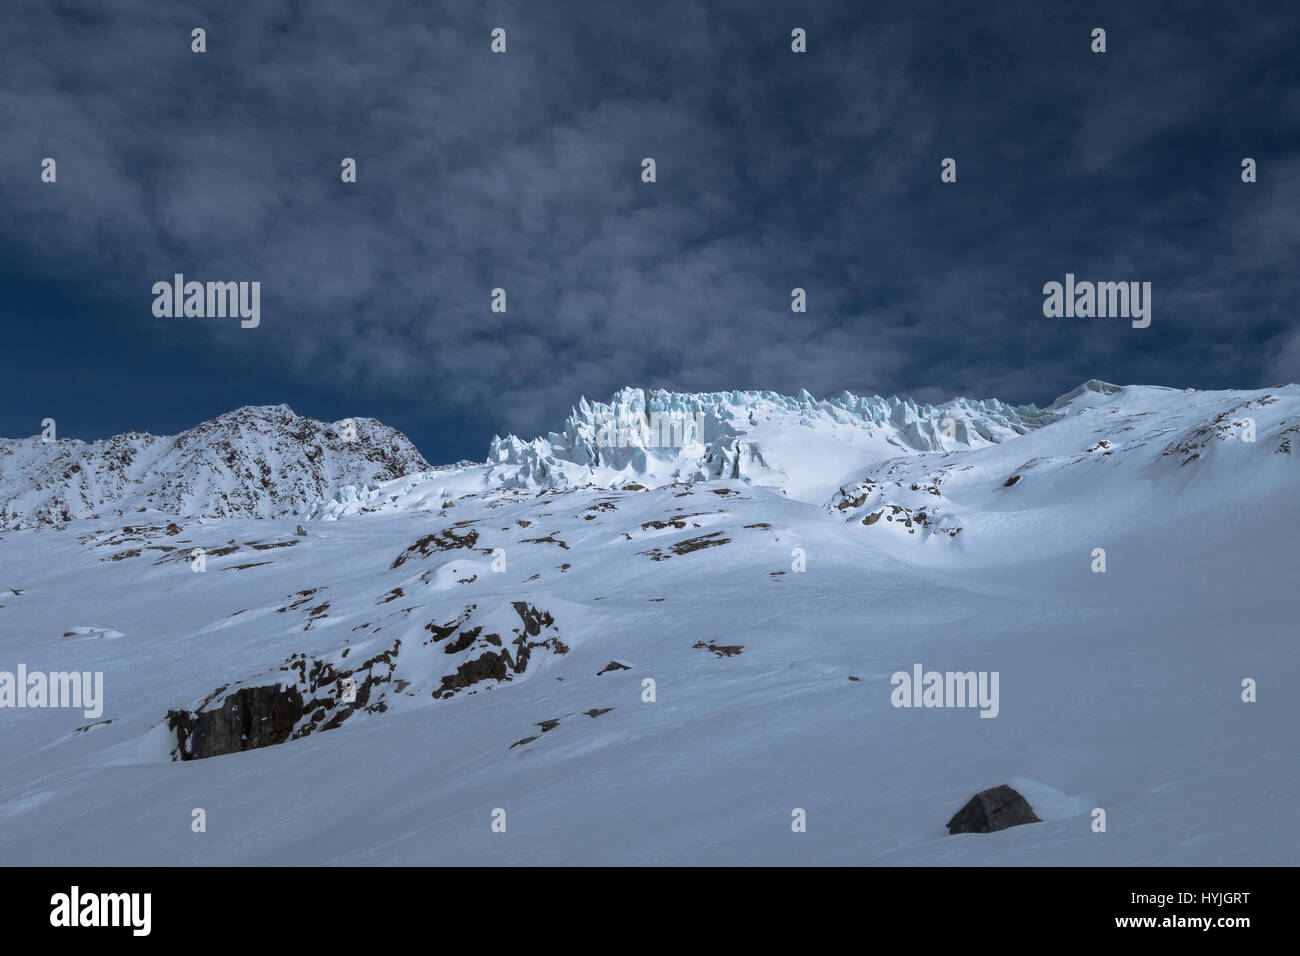 Parte del Glaciar du Tour con resquicios bloques de hielo grietas iluminado por la luz solar a través de las nubes en el horizonte de un vasto paisaje de invierno en los Alpes Foto de stock